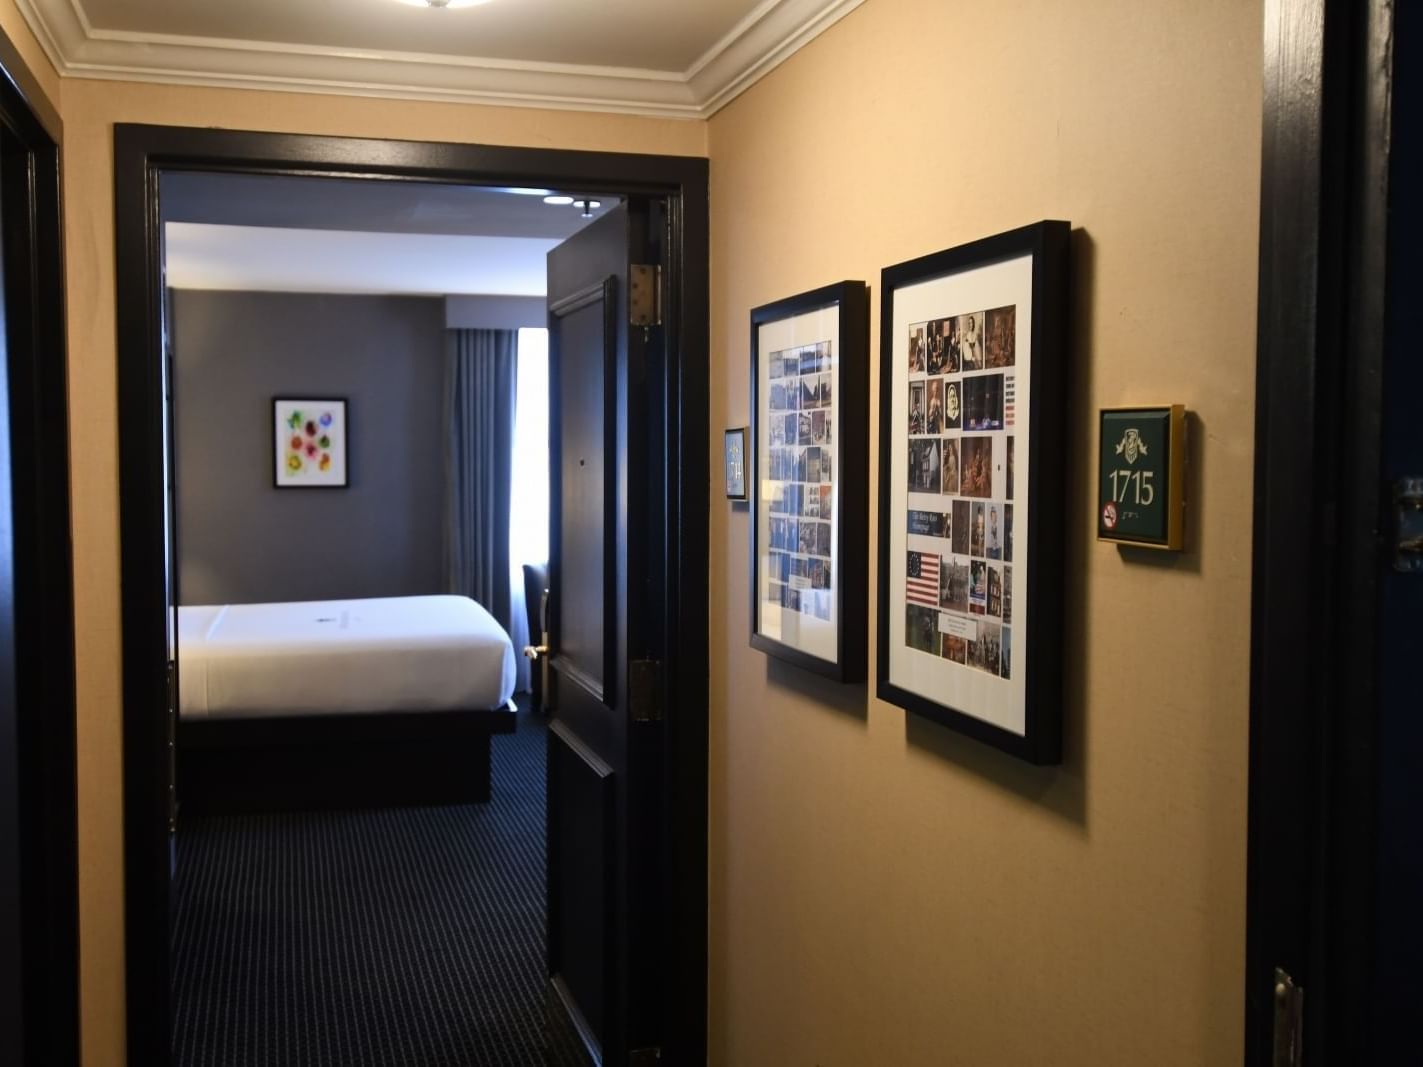 view through open door into hotel room